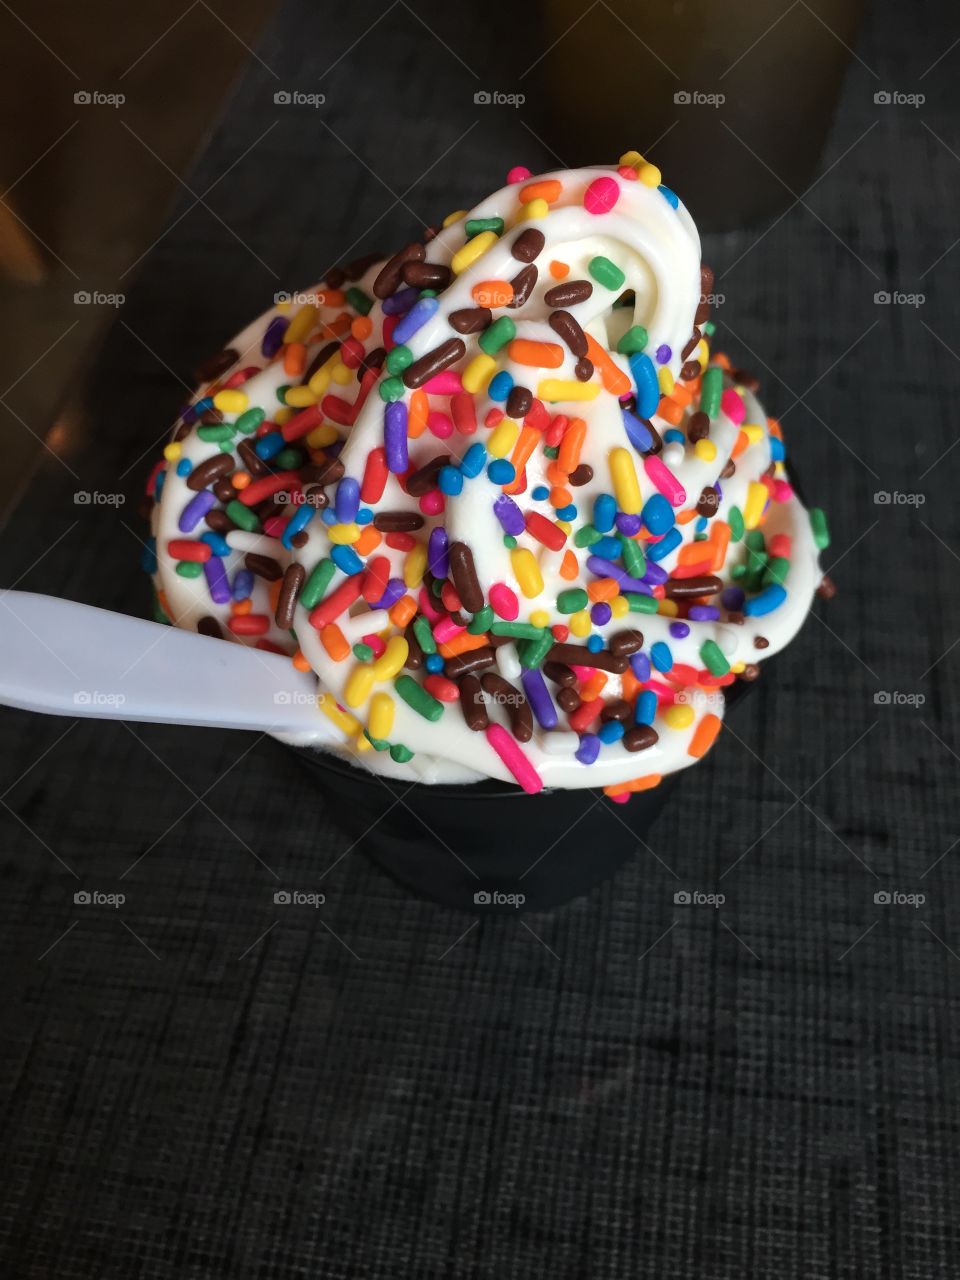 Rainbow sprinkles on ice cream 